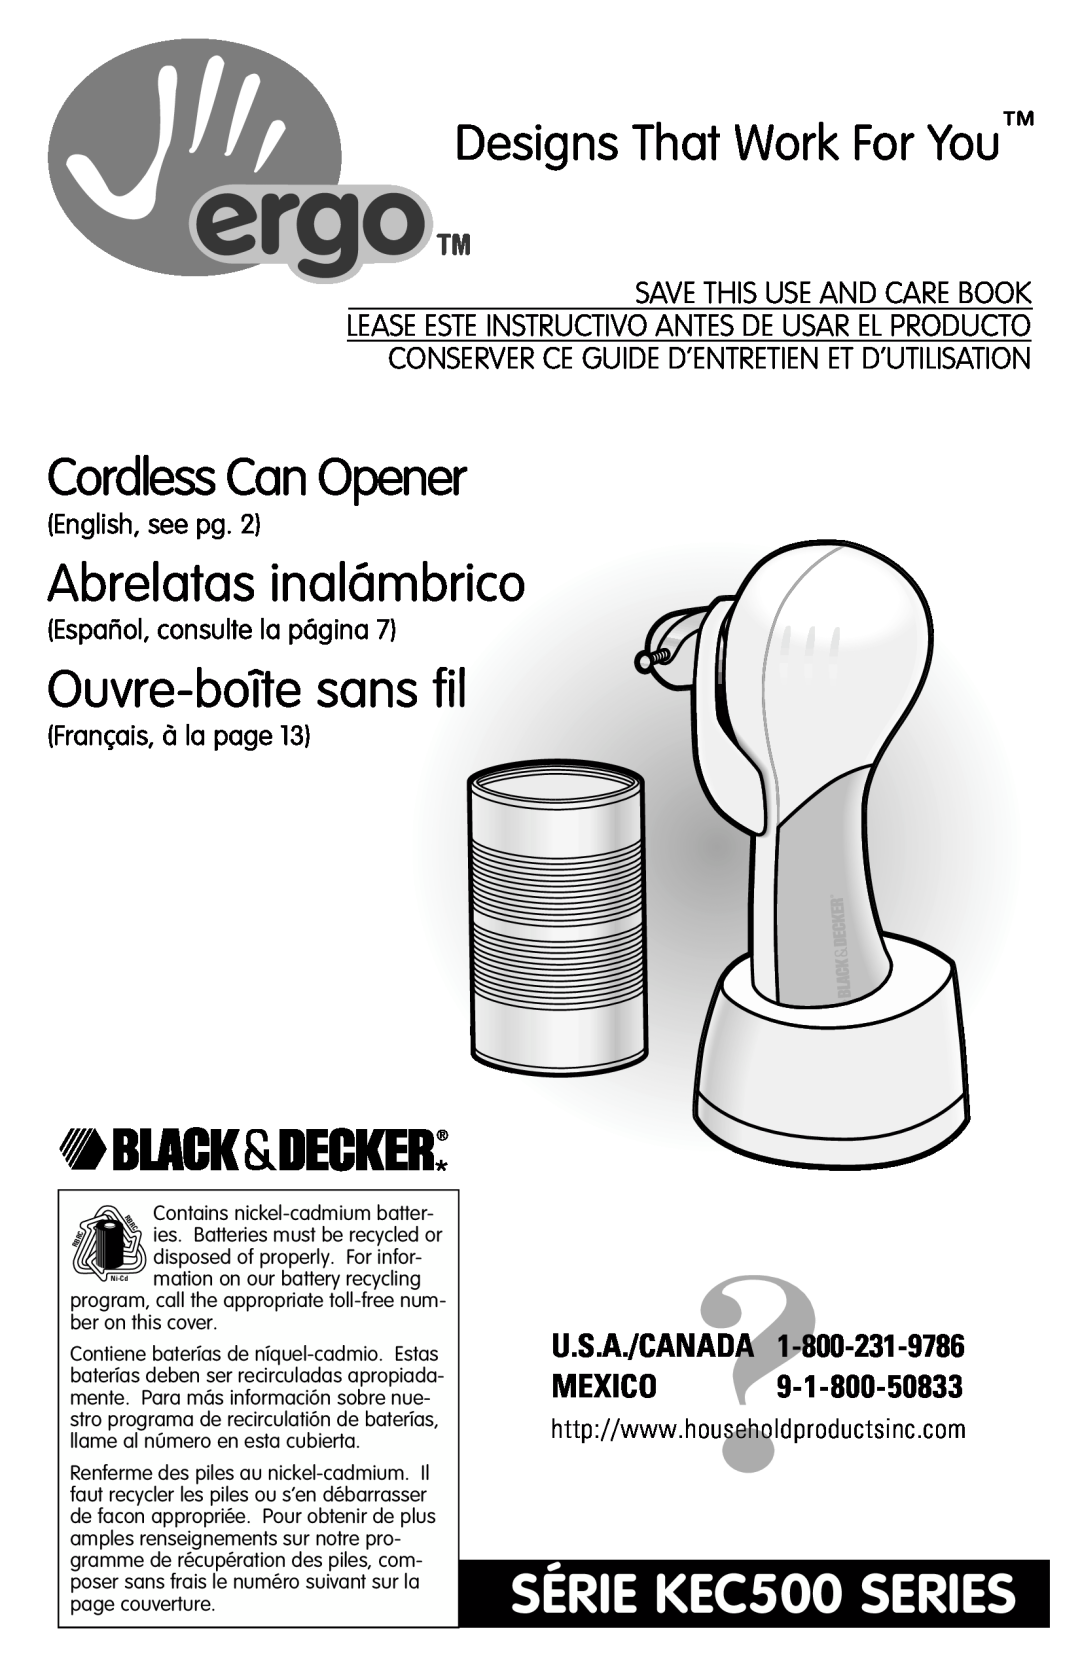 Black & Decker manual Cordless Can Opener, Abrelatas inalámbrico, Ouvre-boîte sans fil, SÉRIE KEC500 SERIES 